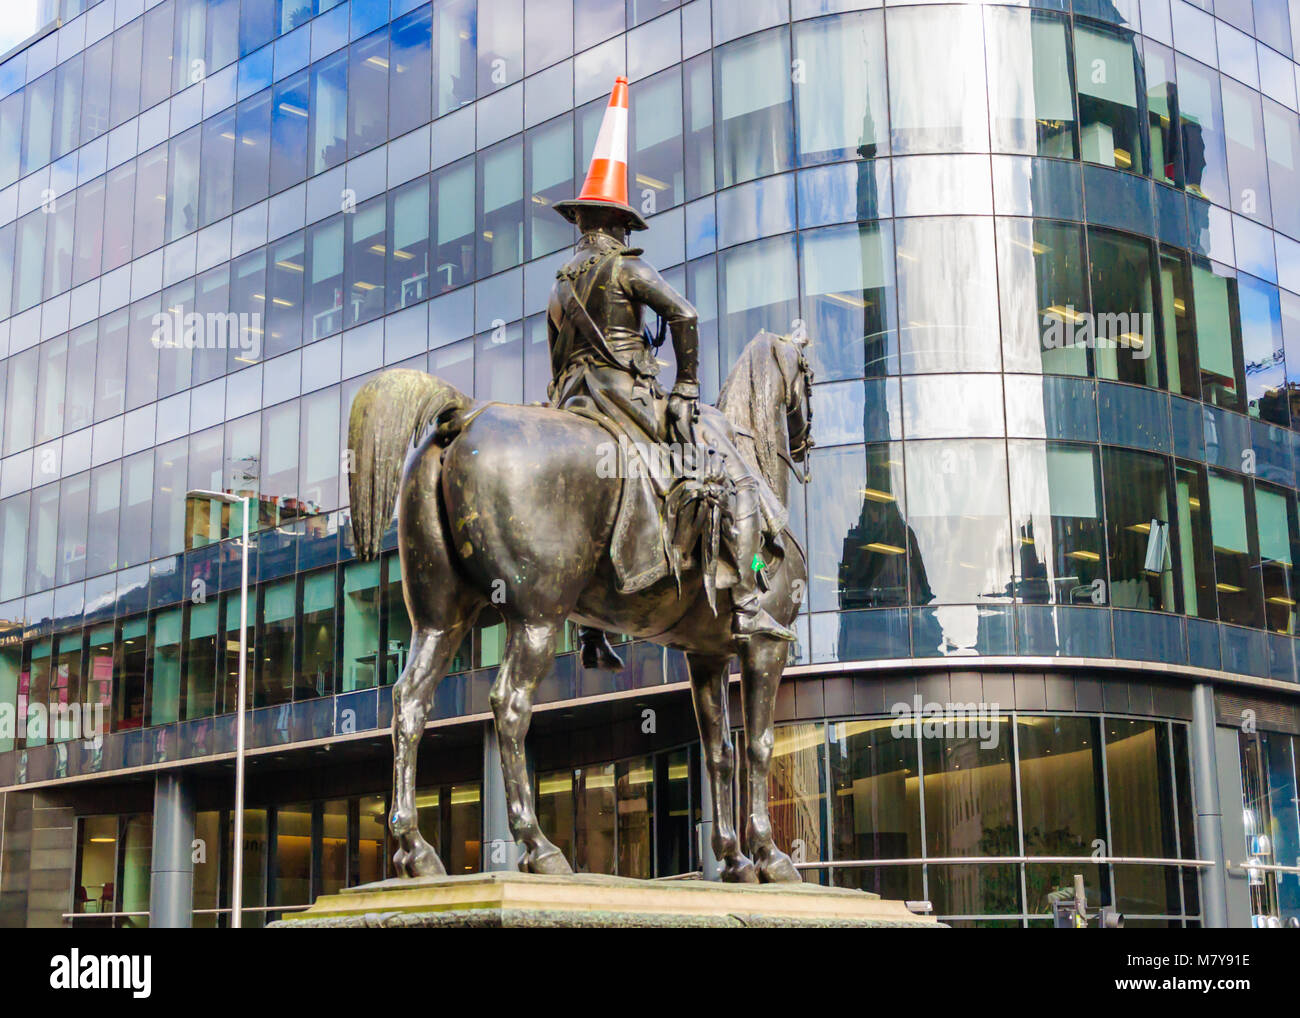 Statue du duc de Wellington avec un cône de circulation sur sa tête à califourchon sur un cheval en face de Goma, Royal Exchange Square, Glasgow. Érigée en 1844. Banque D'Images